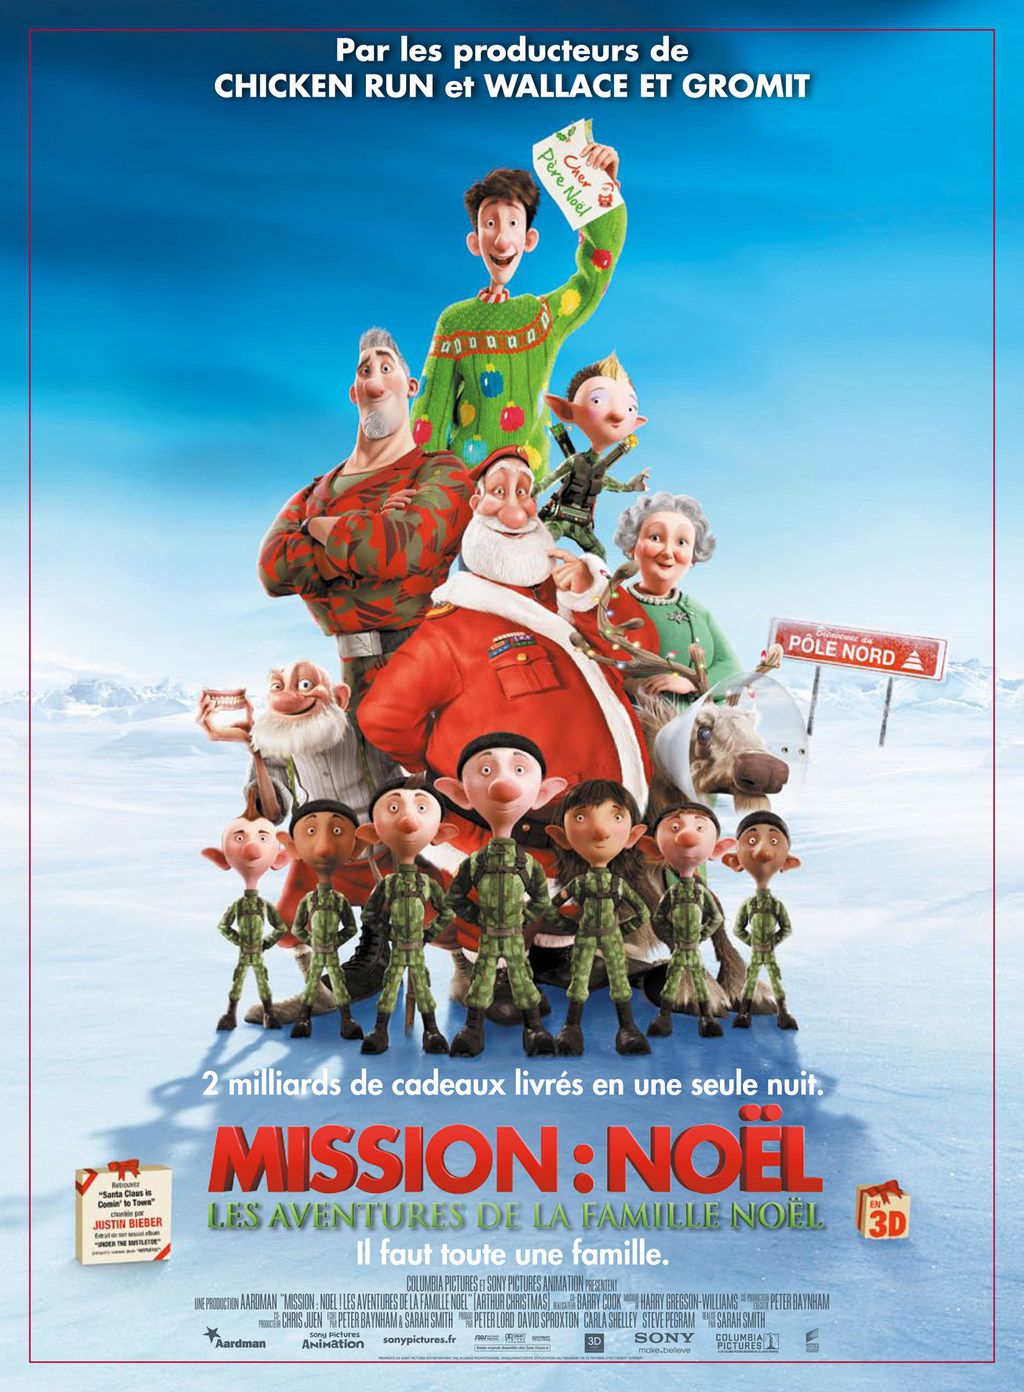 Mission : Noël - Les Aventures de la famille Noël - Long-métrage d'animation (2011) streaming VF gratuit complet